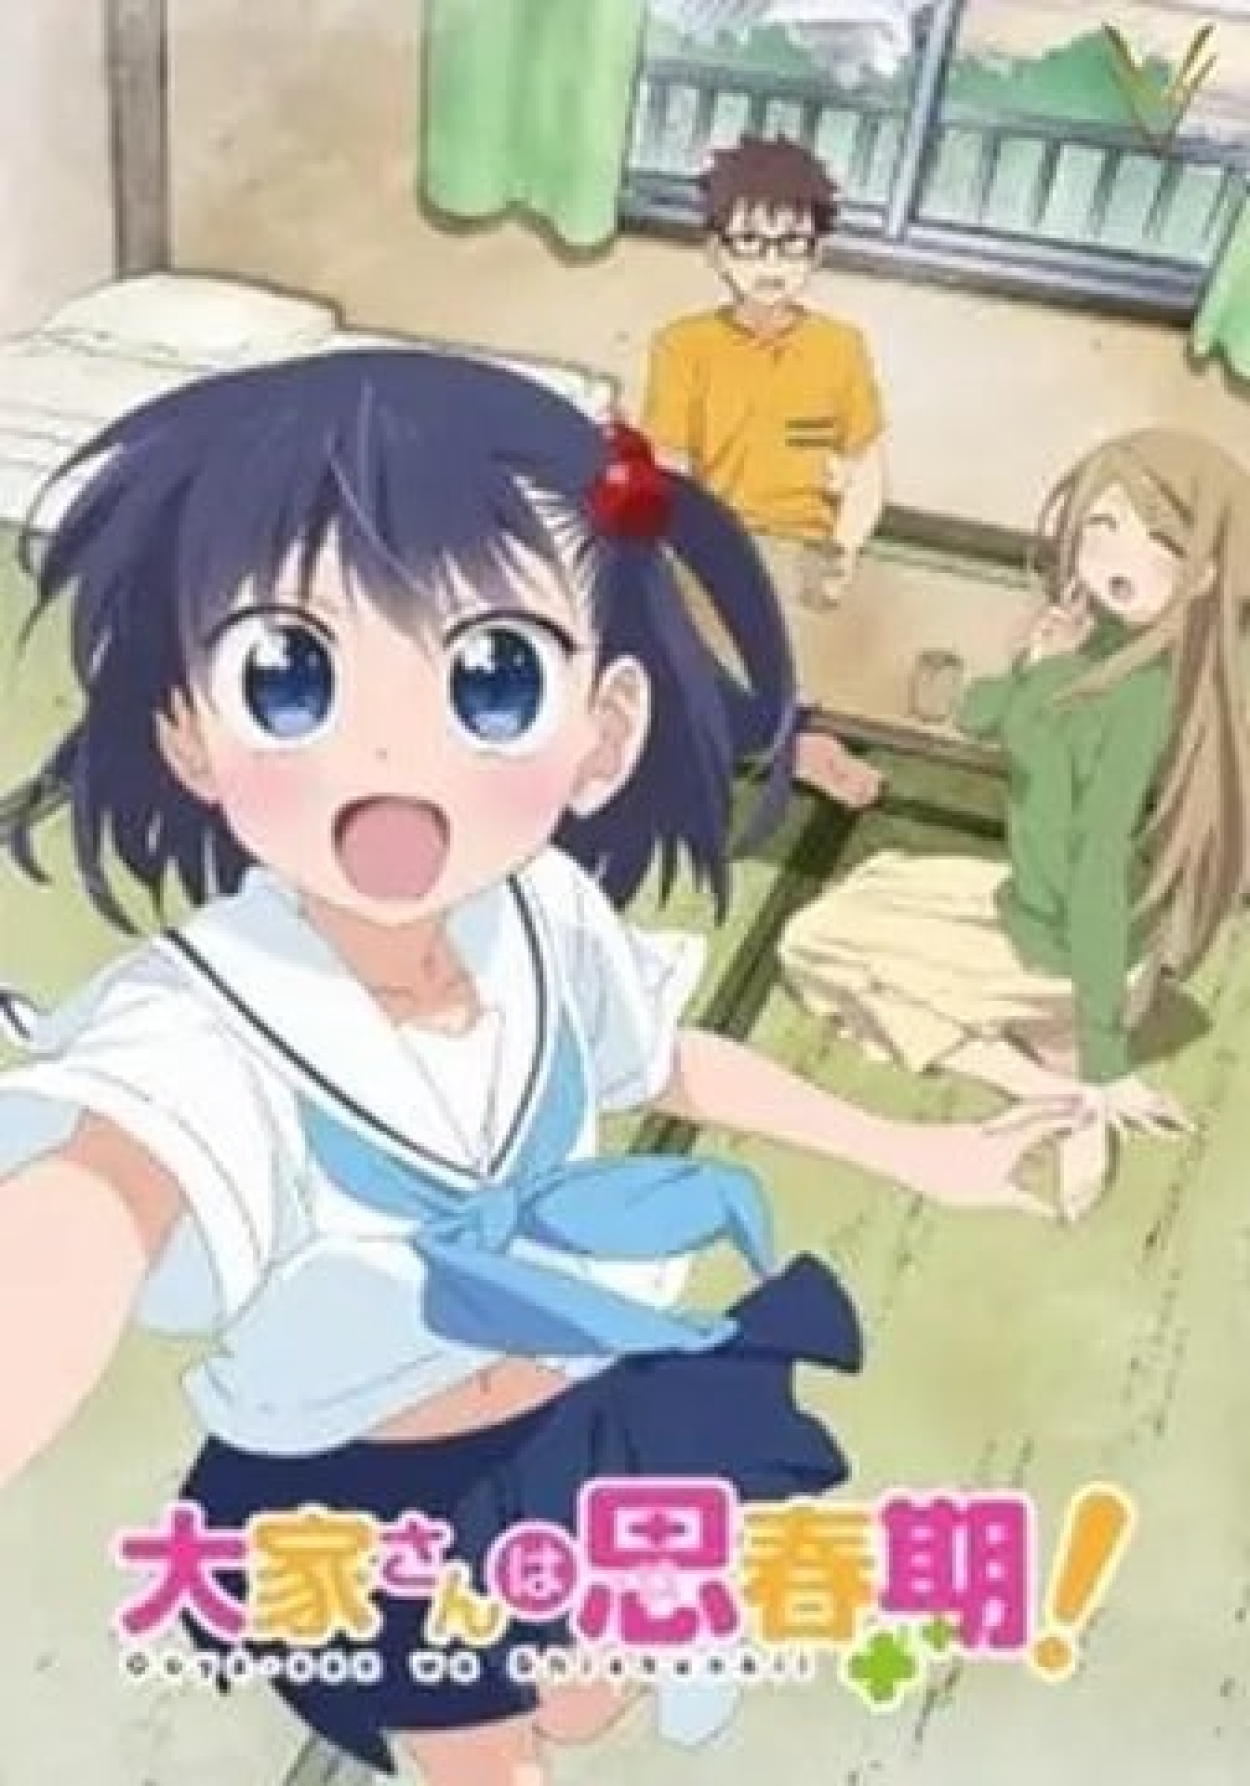 Anime Elfen Lied - Sinopse, Trailers, Curiosidades e muito mais - Cinema10